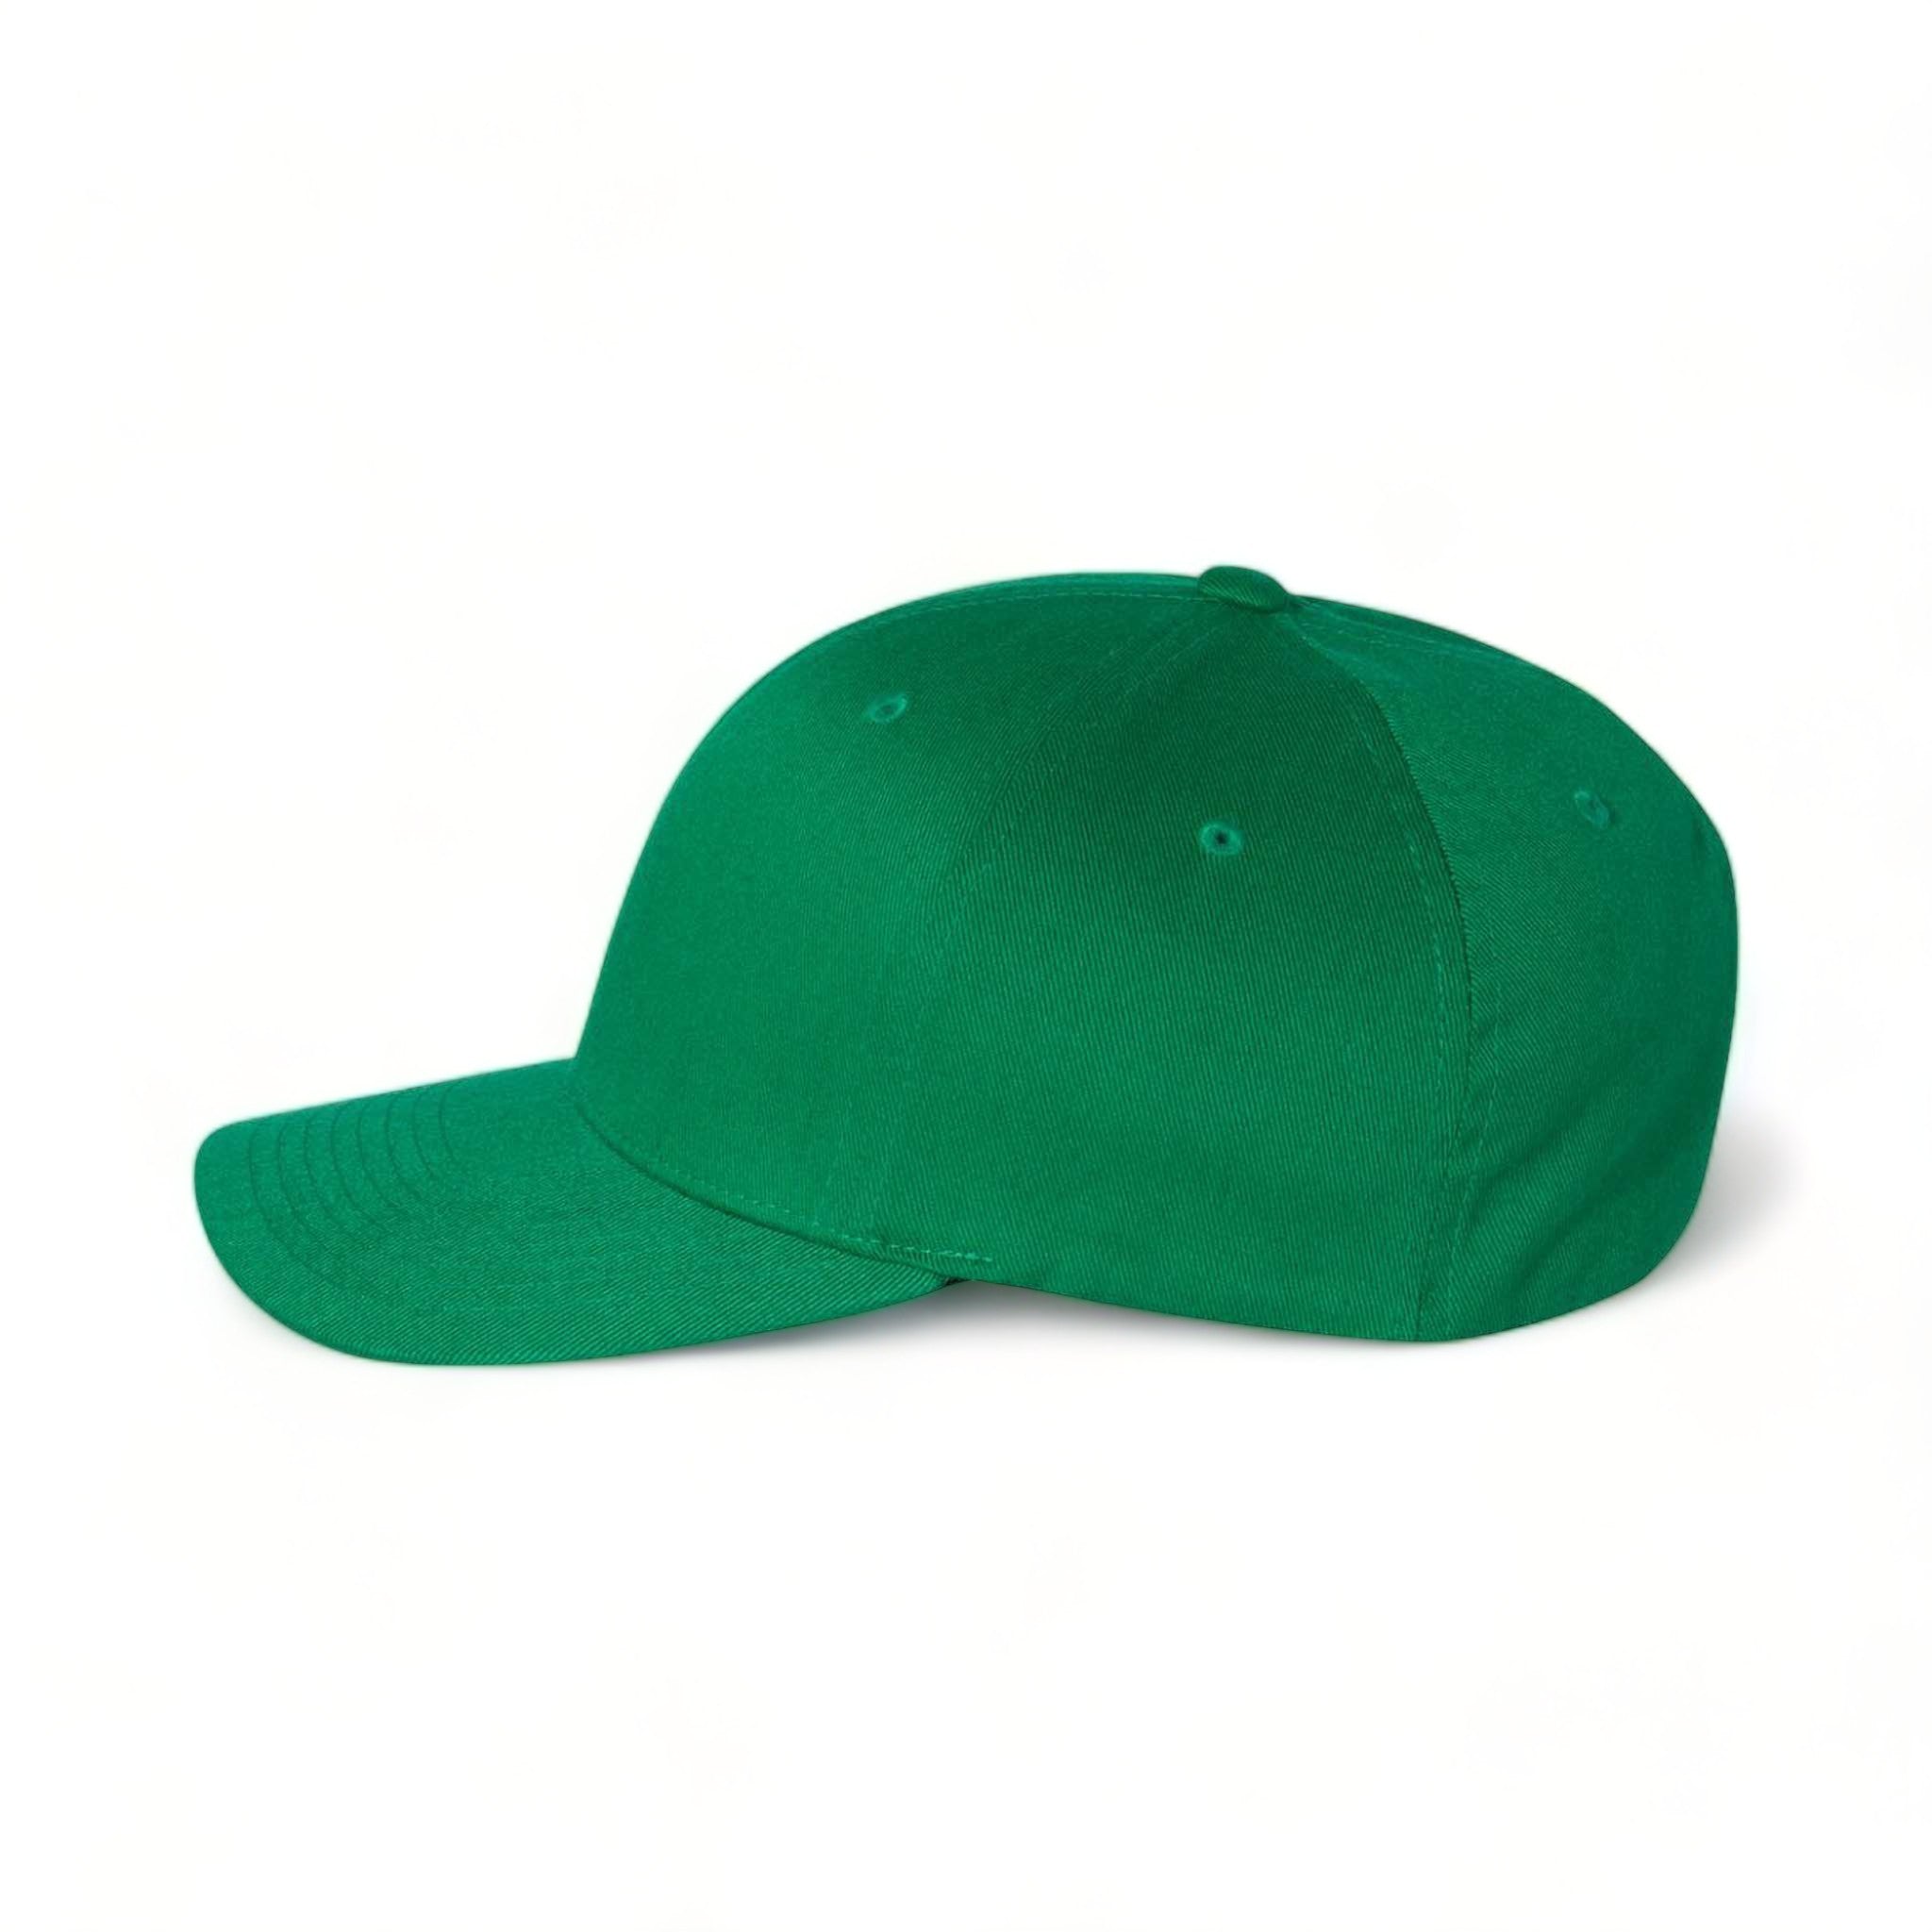 Side view of Flexfit 6277 custom hat in pepper green